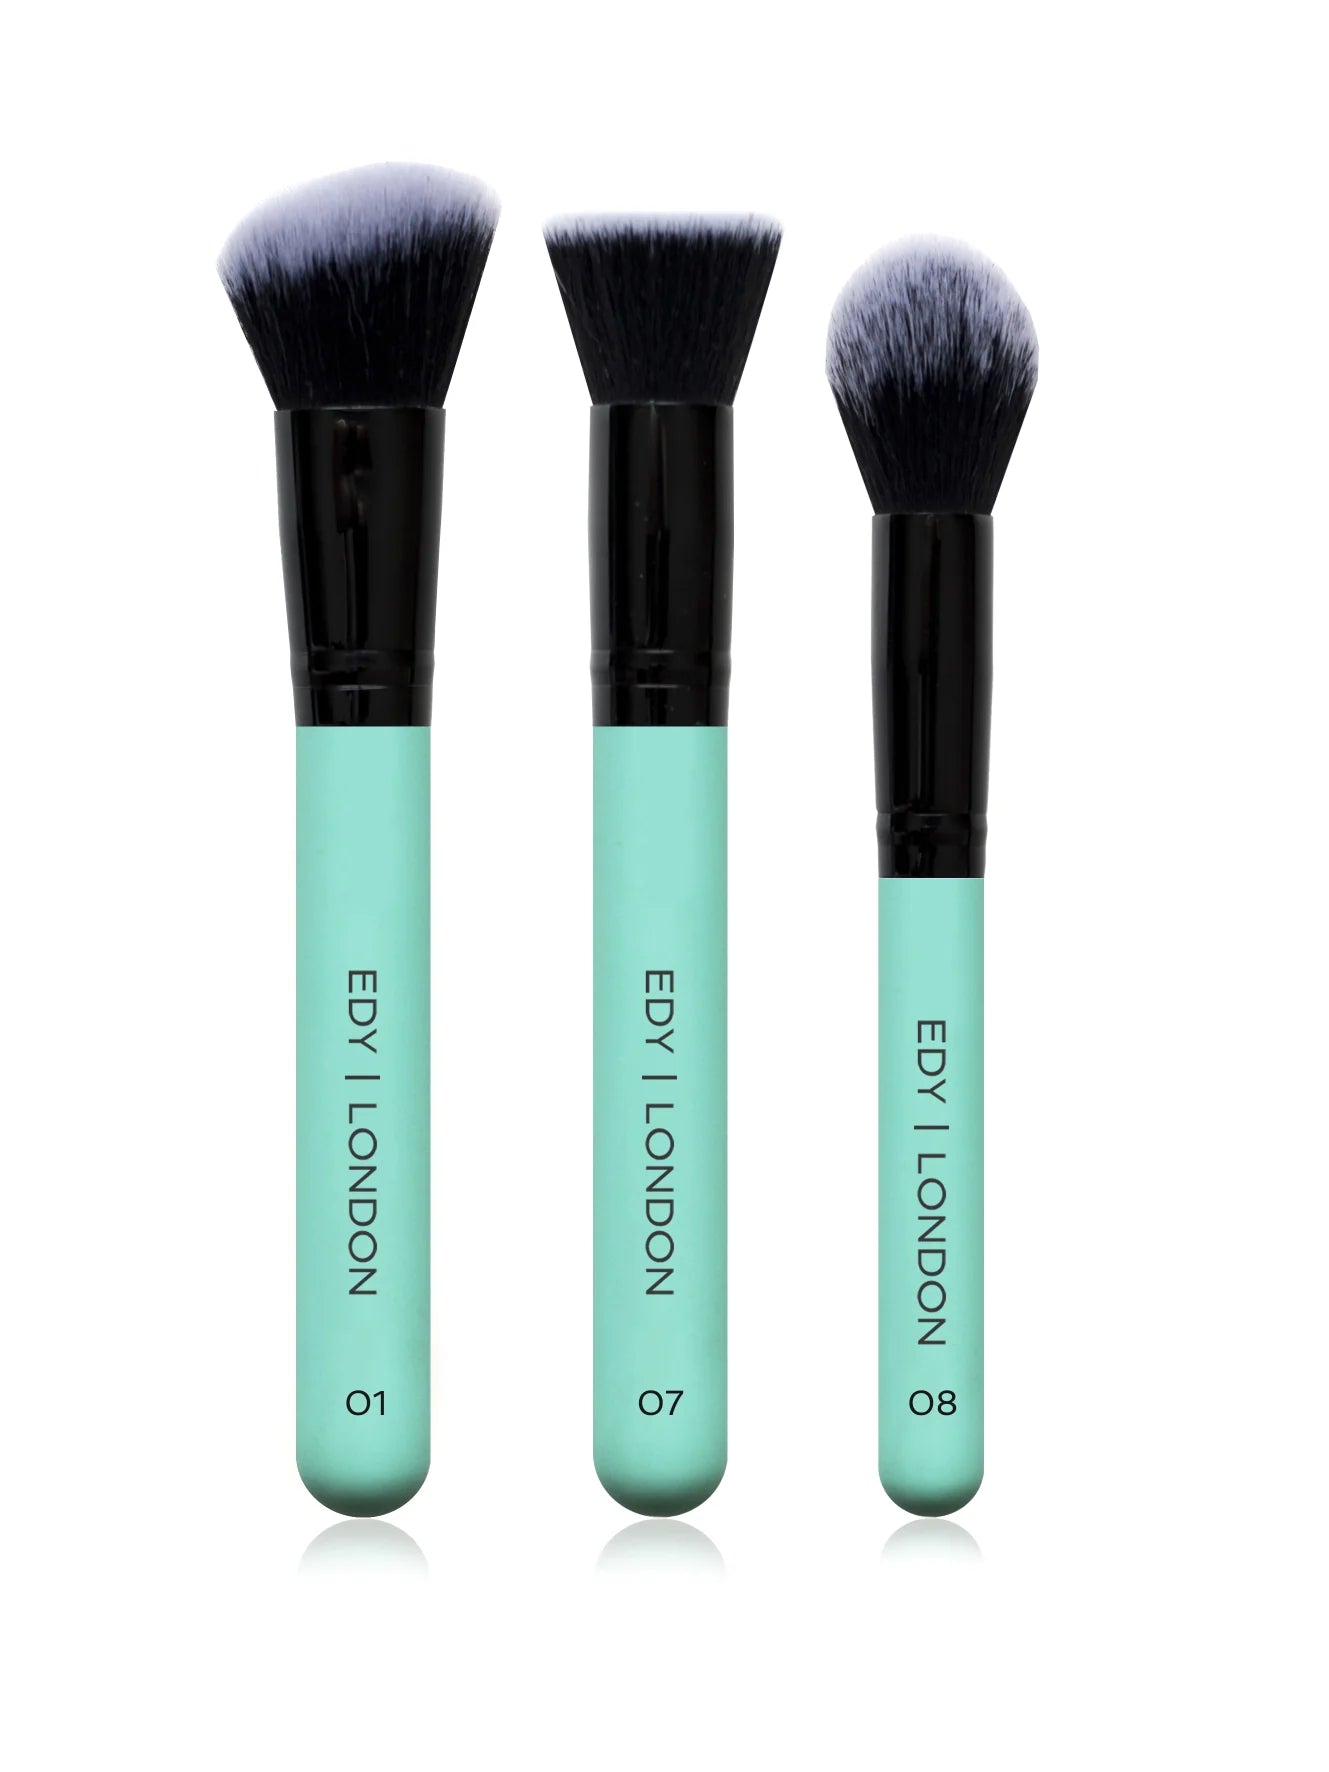 Dewy Skin Brush Set 508 Make-up Brush EDY LONDON Turquoise   [variant_option4] EDY LONDON PRODUCTS UK shop.edy.london